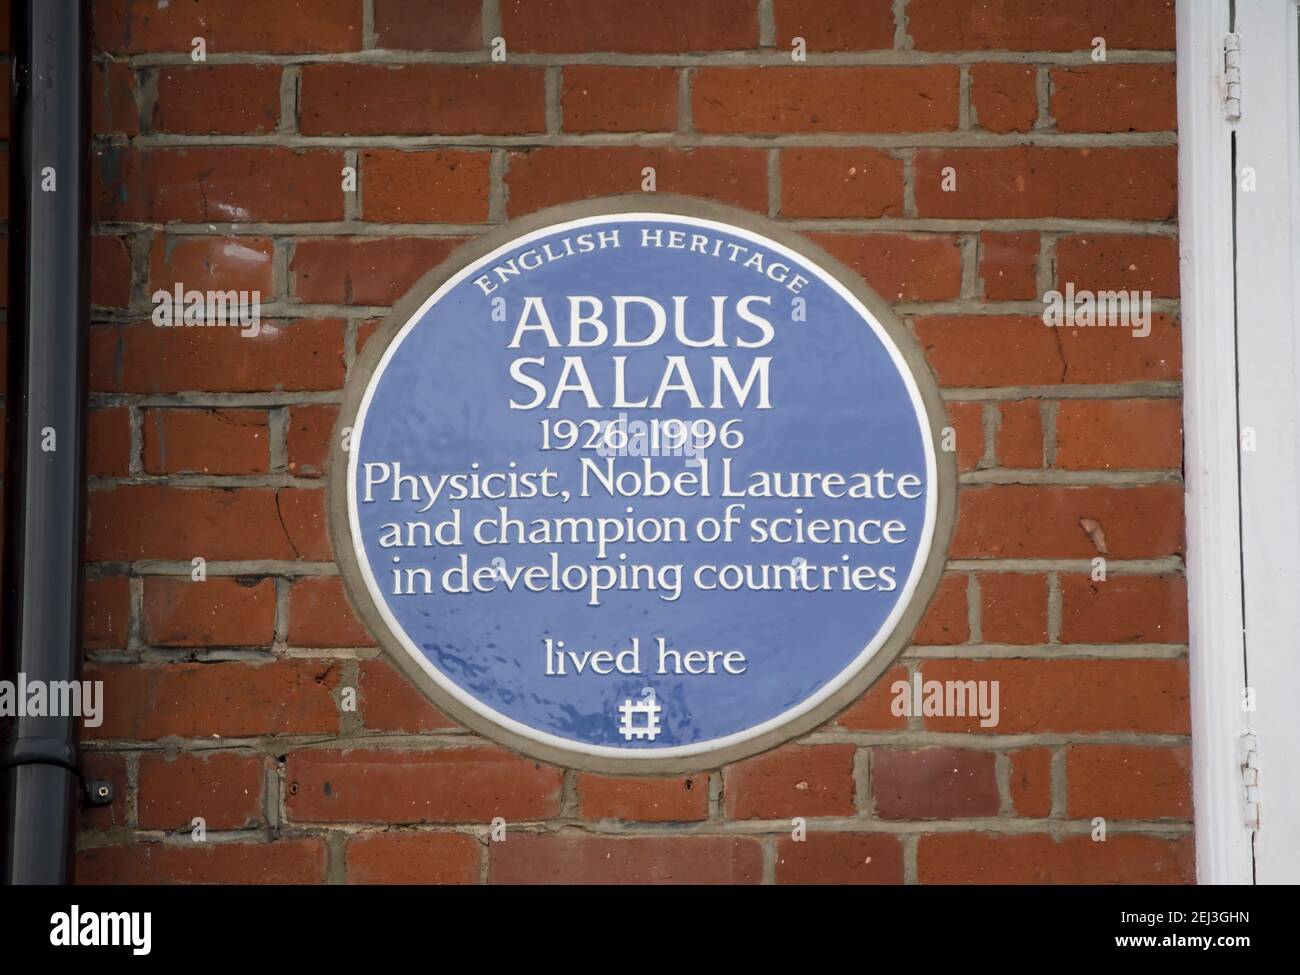 plaque bleue du patrimoine anglais marquant une maison de physicien et prix nobel abdus salam, à putney, londres, angleterre Banque D'Images